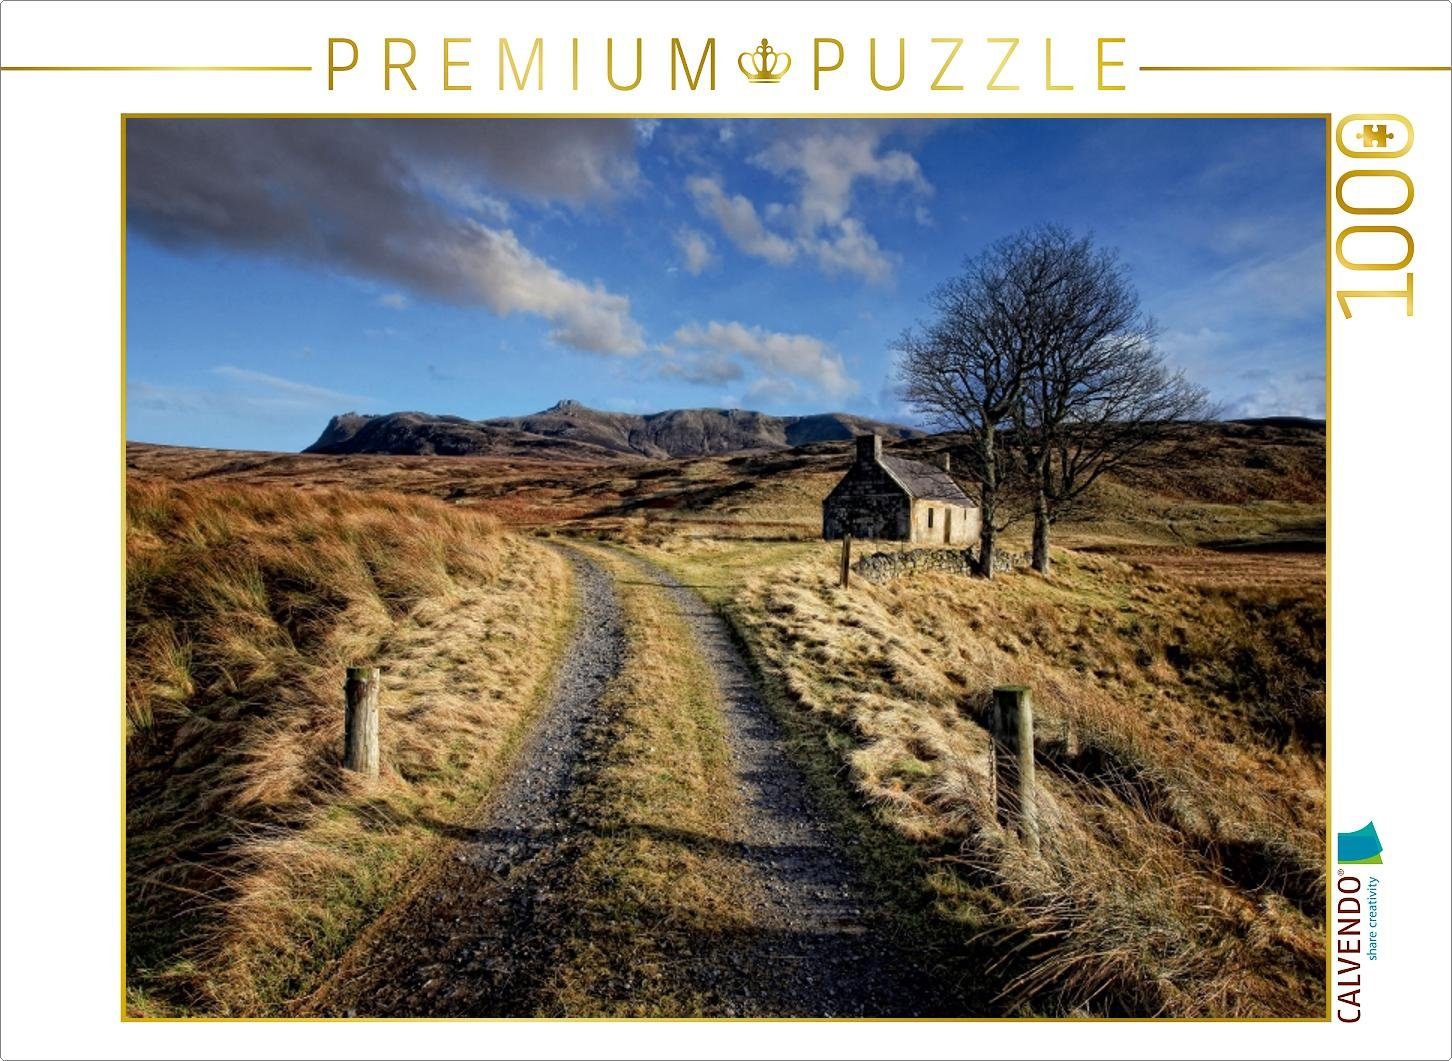 Puzzle CALVENDO Ben Martina 1000 48 Puzzleteile 1000 Foto-Puzzle Bild Lege-Größe Schottland von Cross, Teile CALVENDO Puzzle x Hope, Sutherland, cm 64